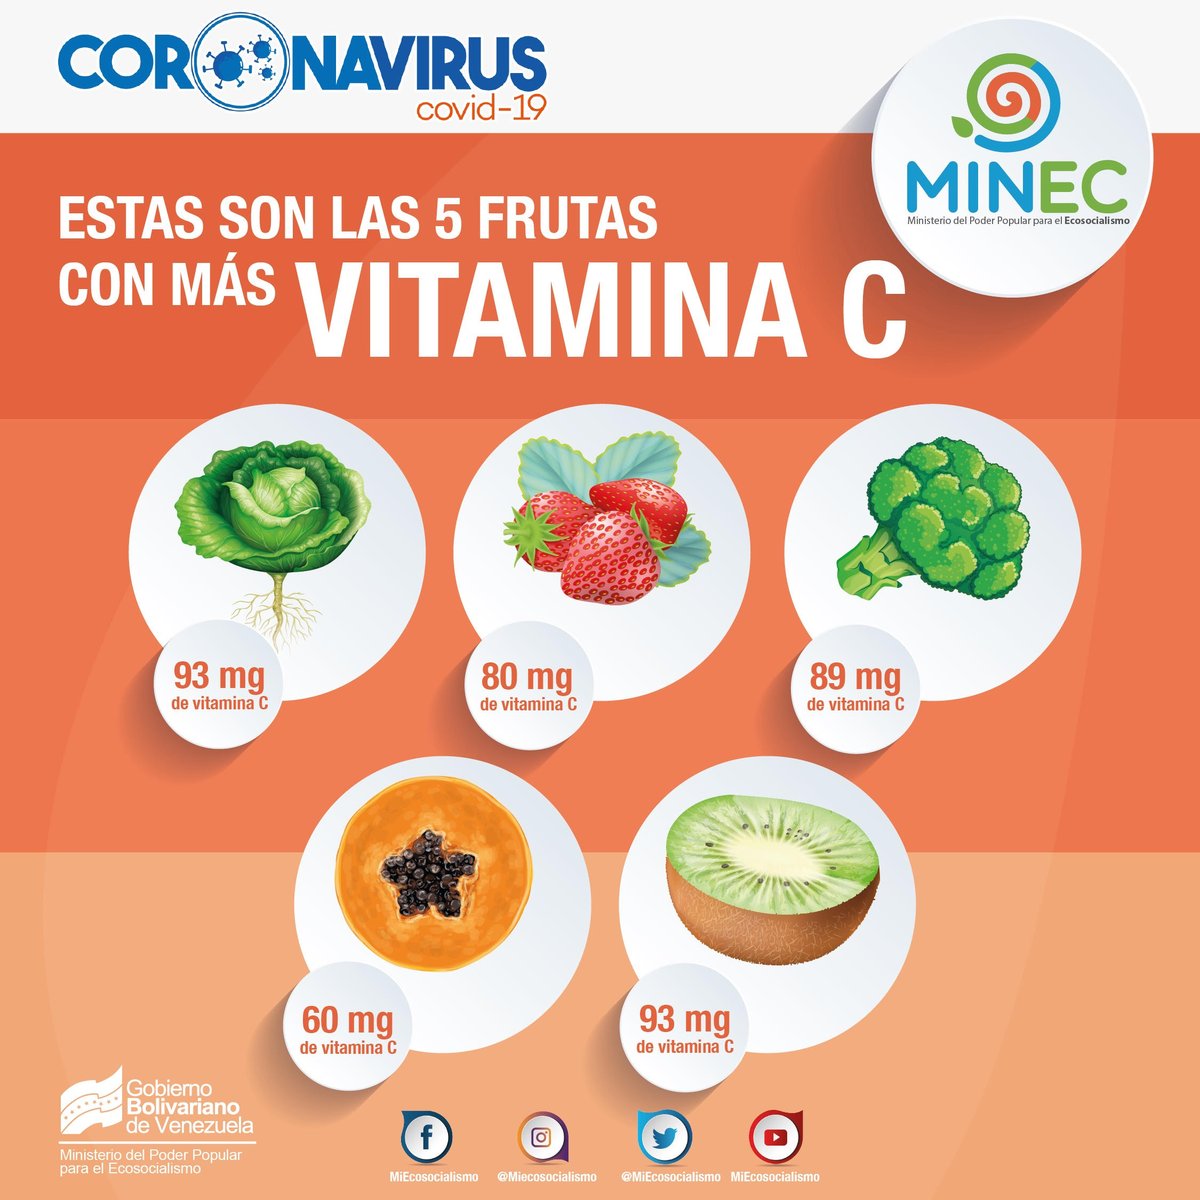 🗣️ 𝑺𝒂𝒃𝒊́𝒂𝒔 𝒒𝒖𝒆 ✍️🇻🇪 La vitamina C juega un papel fundamental para el buen funcionamiento de nuestro organismo. Tener las defensas altas ayuda a nuestro organismo a combatir enfermedades! #CaminoElectoralYDemocrático